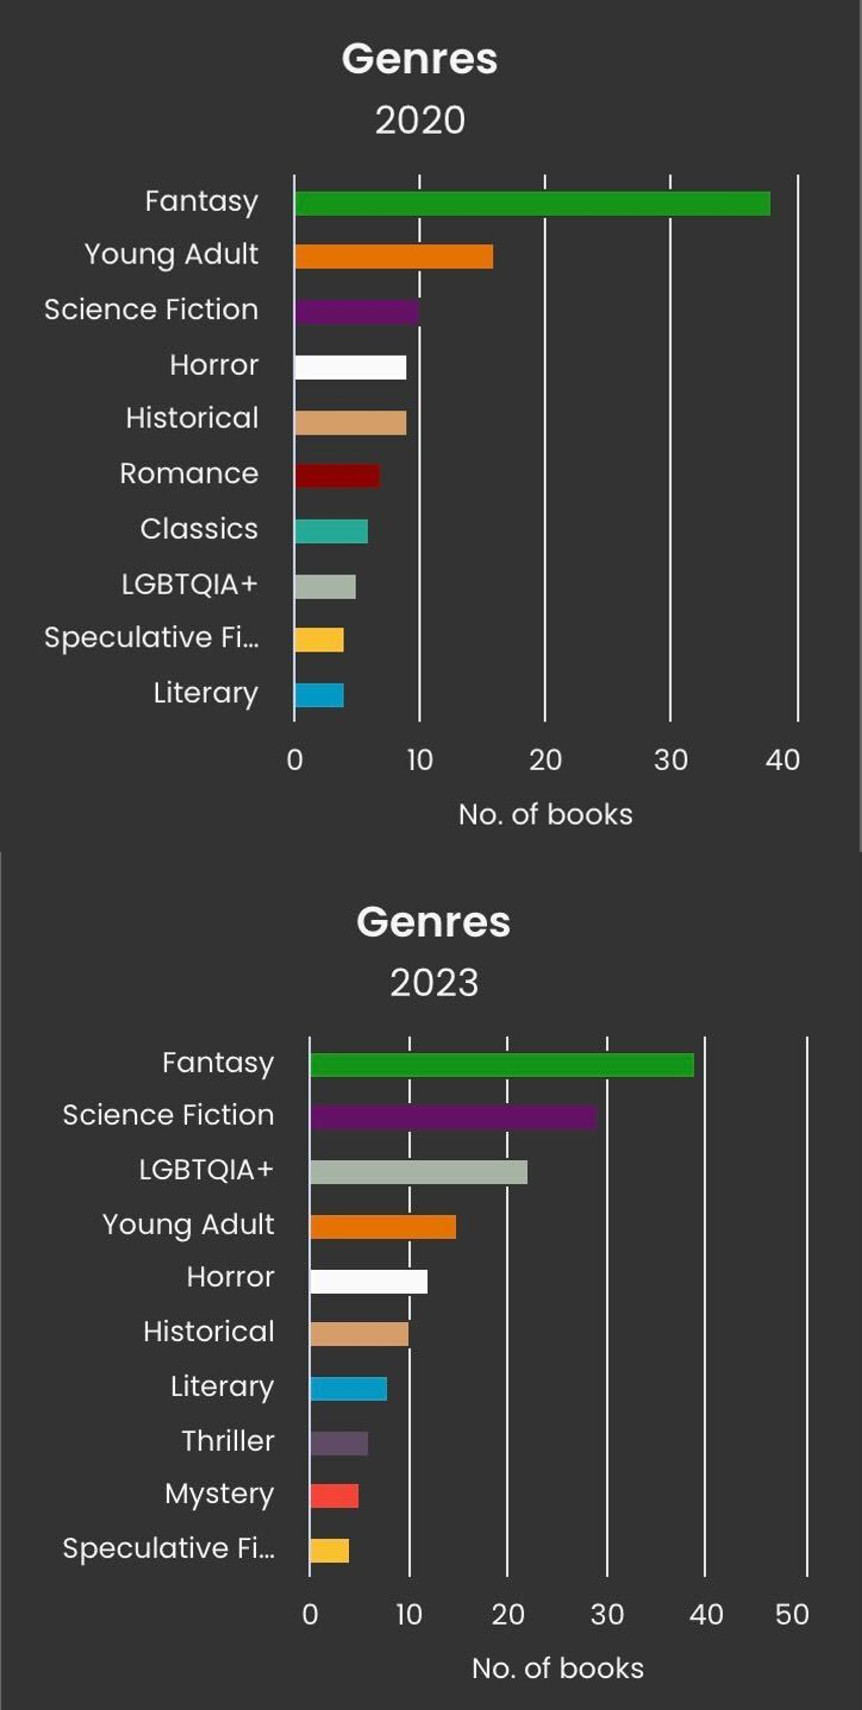 لقطة شاشة لـ StoryGraph تعرض رسمين بيانيين شريطيين مكدسين. الأعلى لأنواع الكتب المقروءة في عام 2020، وعلى رأسها كتب الخيال يليها كتب الشباب. أما الجزء السفلي فهو لأنواع الكتب المقروءة في عام 2023، وعلى رأسها كتب الخيال يليها الخيال العلمي.